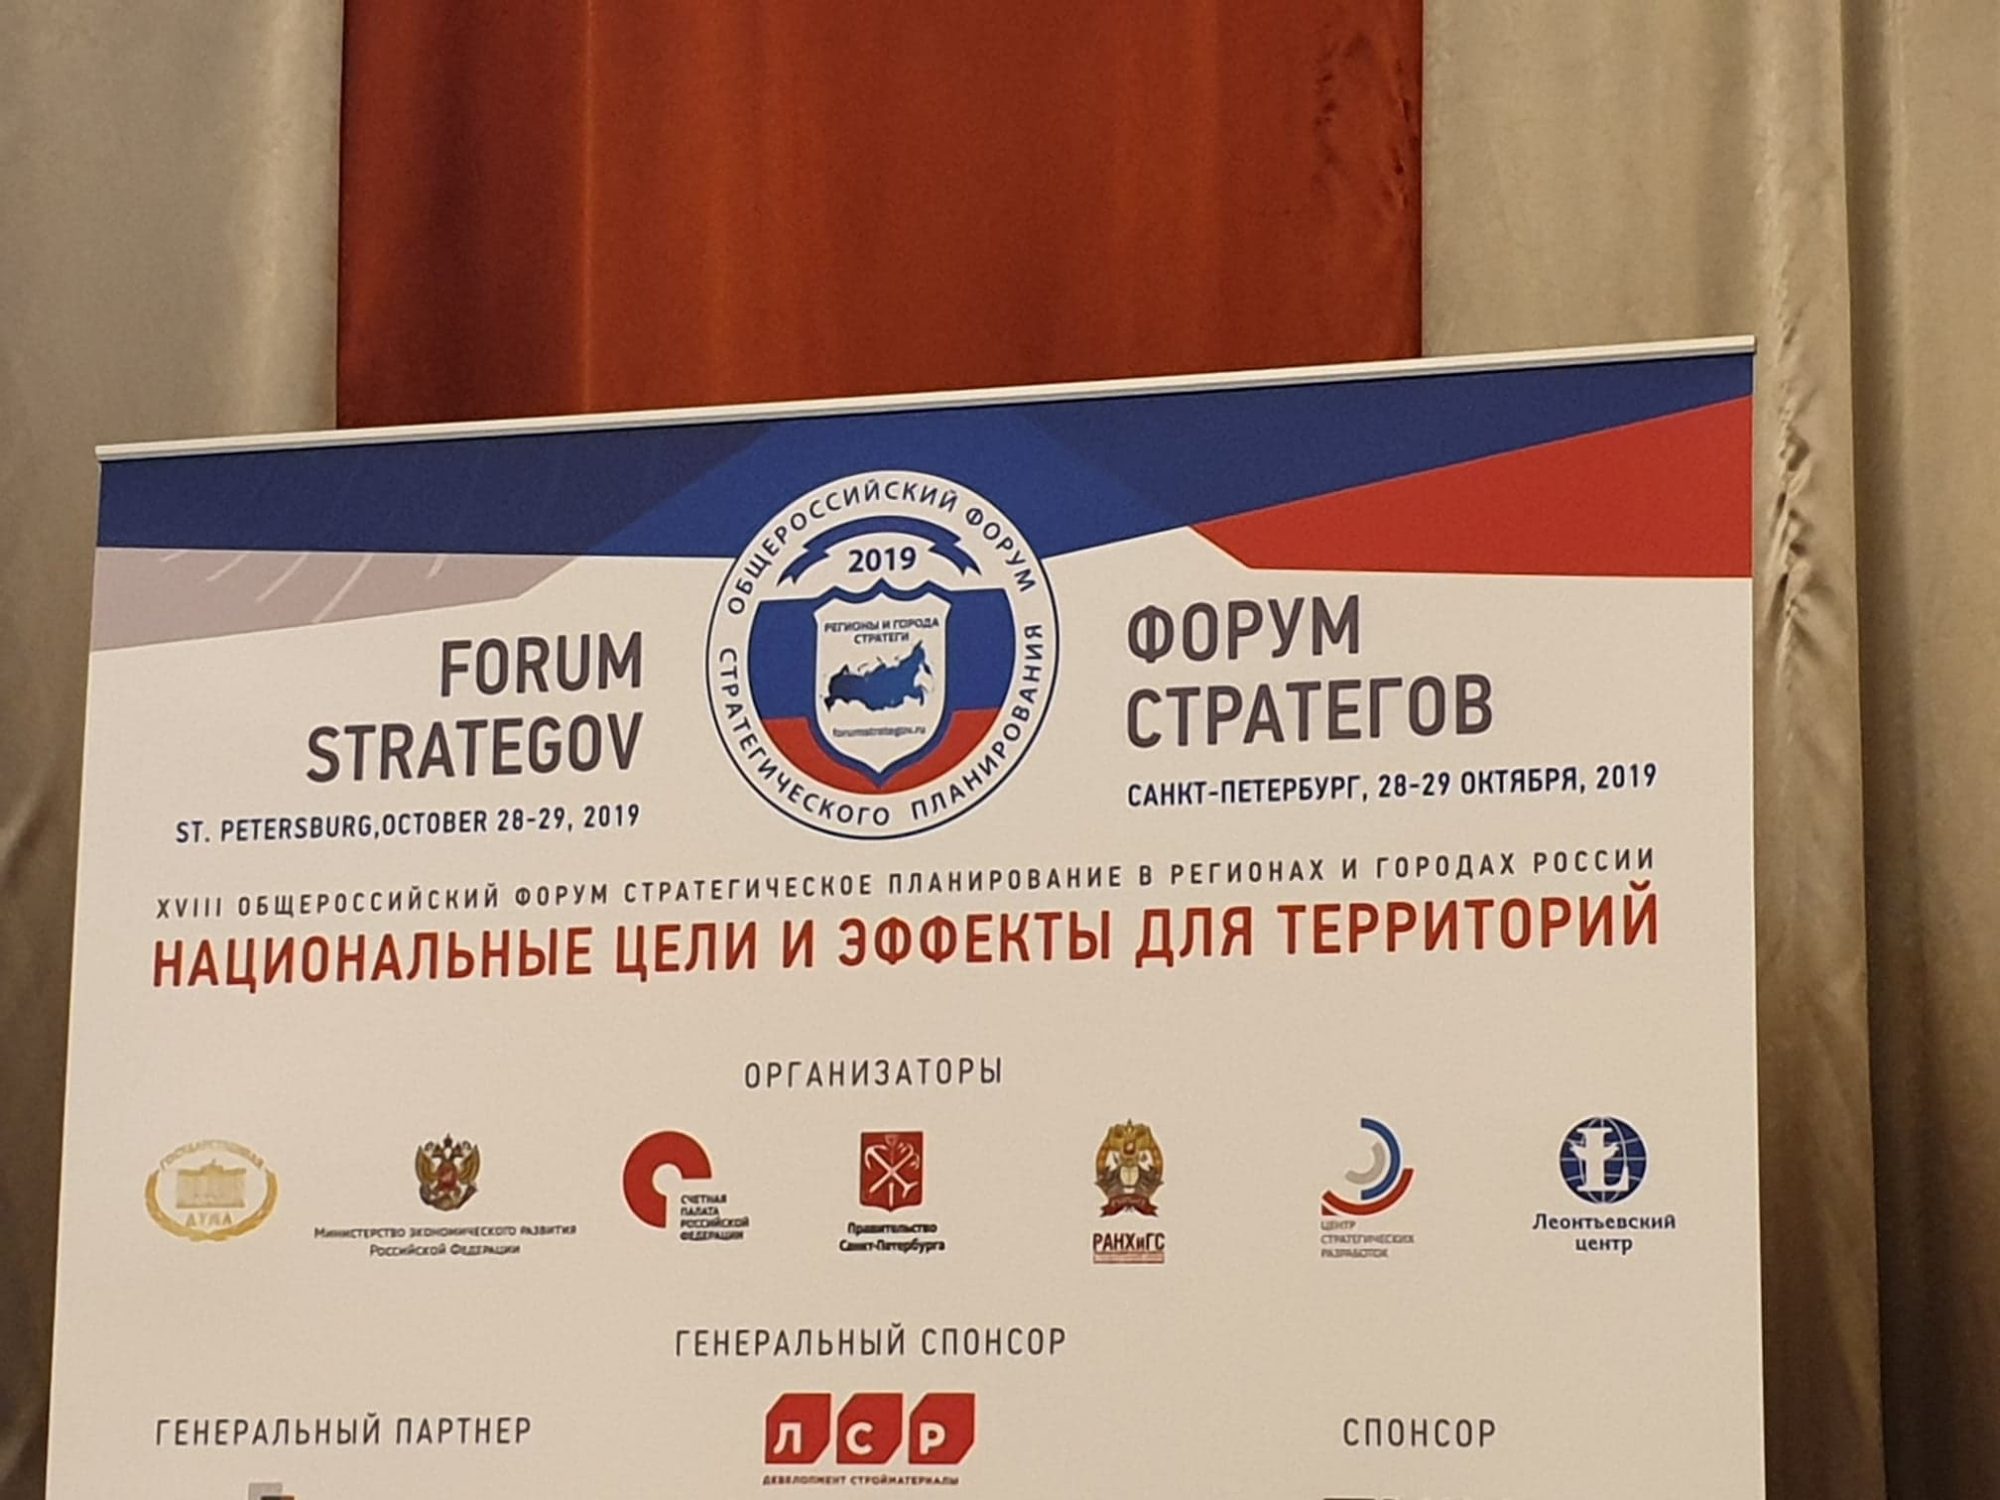 Forum Strategov